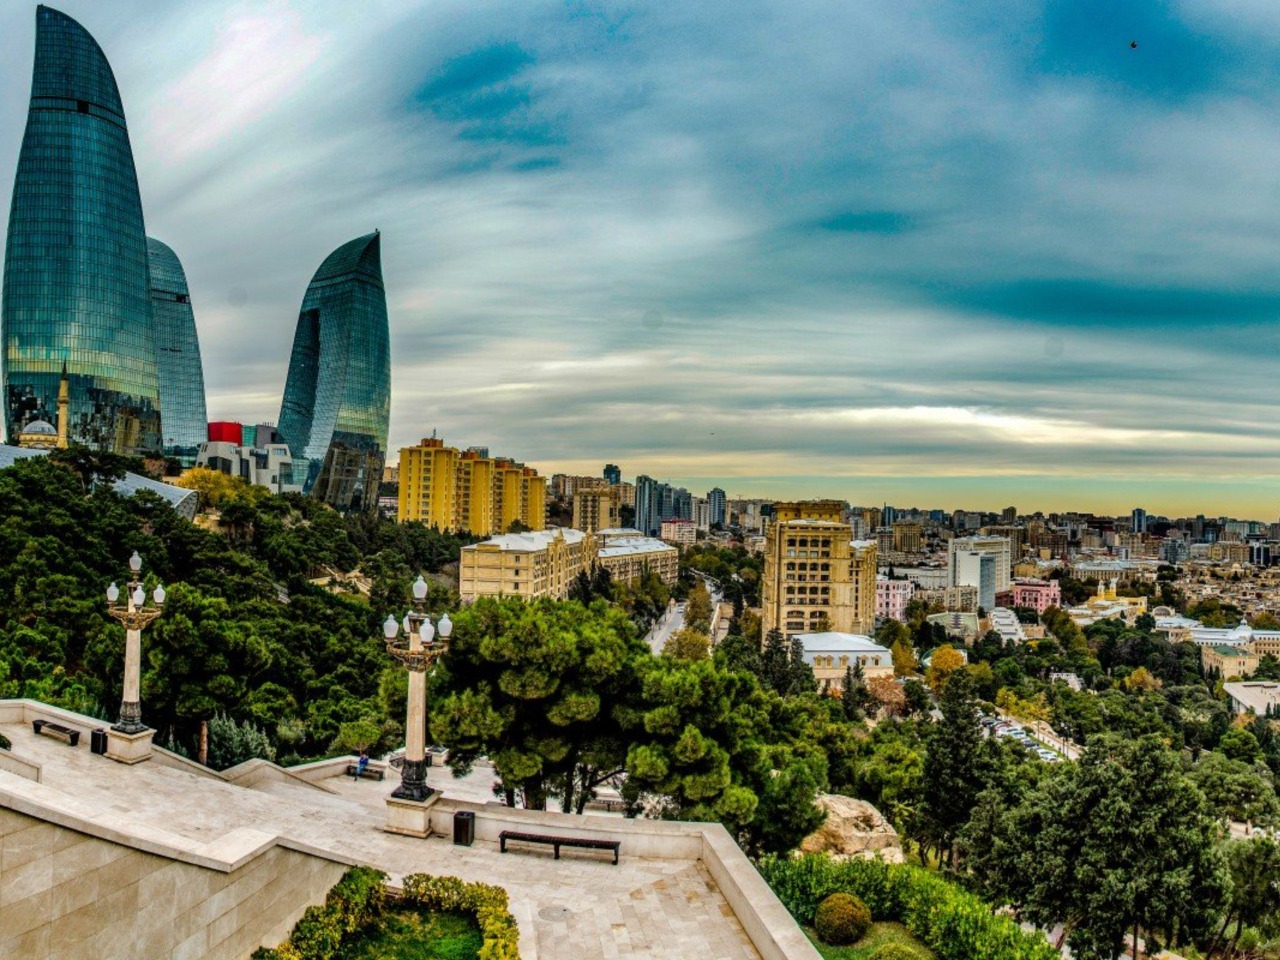 Добро пожаловать в солнечный Баку! | Цена 260€, отзывы, описание экскурсии